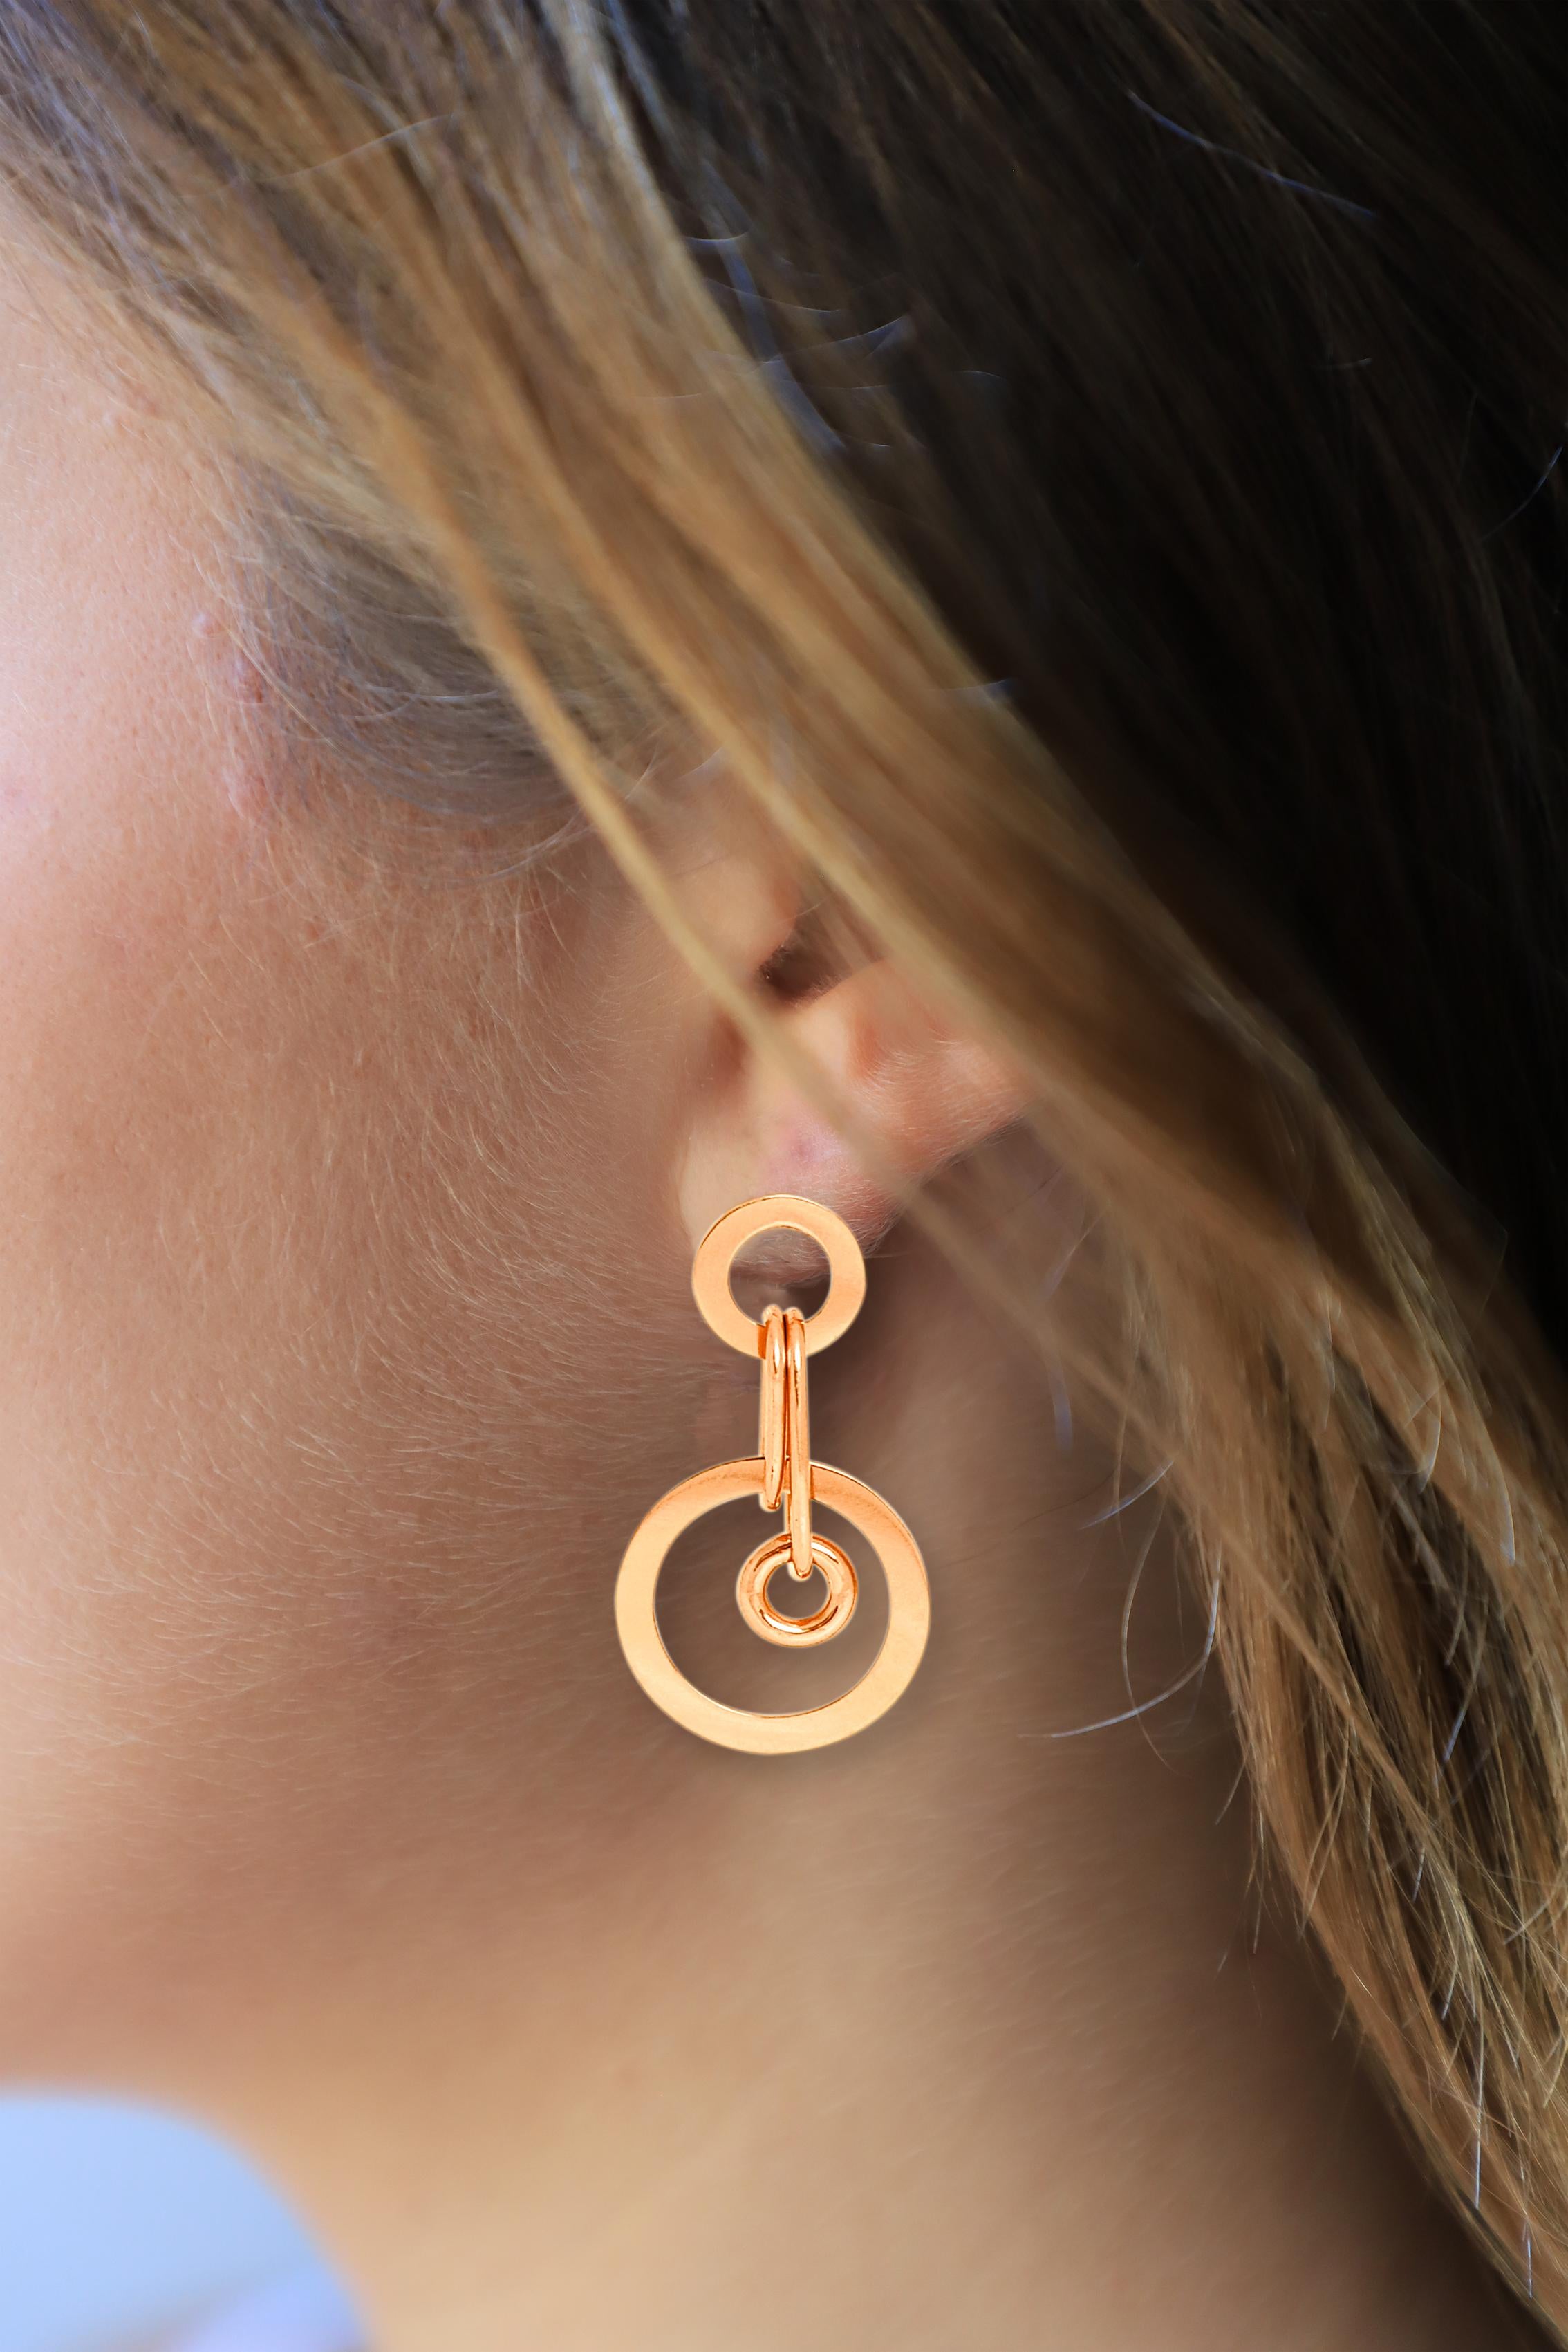 modern style earrings